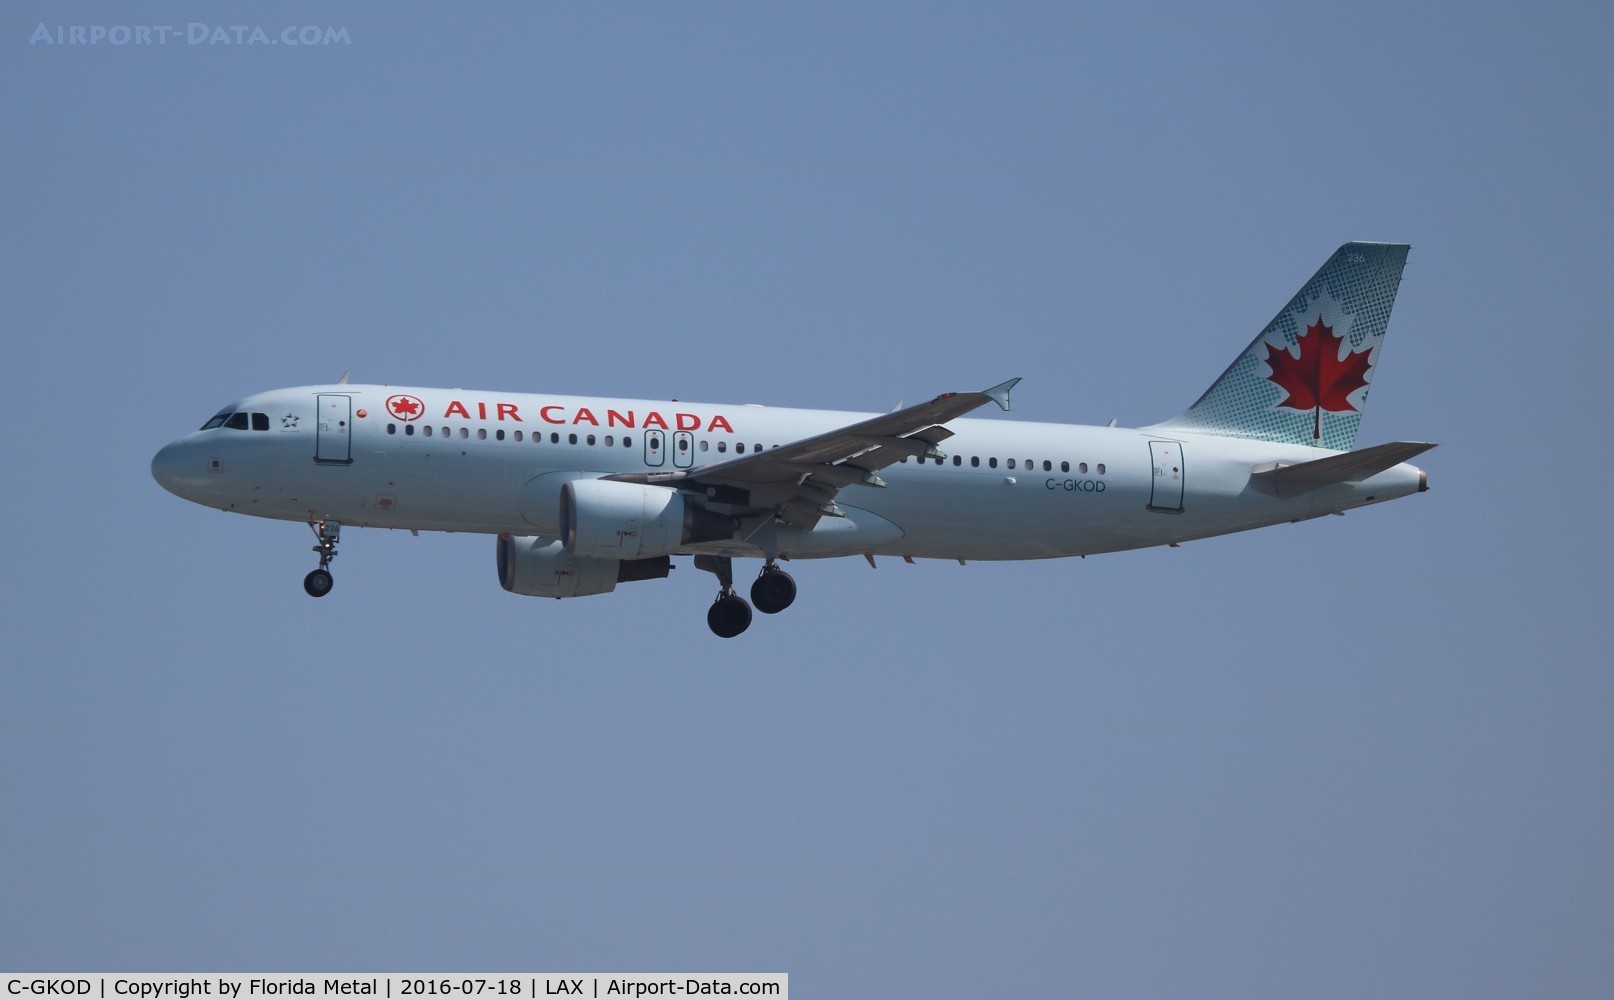 C-GKOD, 2002 Airbus A320-214 C/N 1864, Air Canada